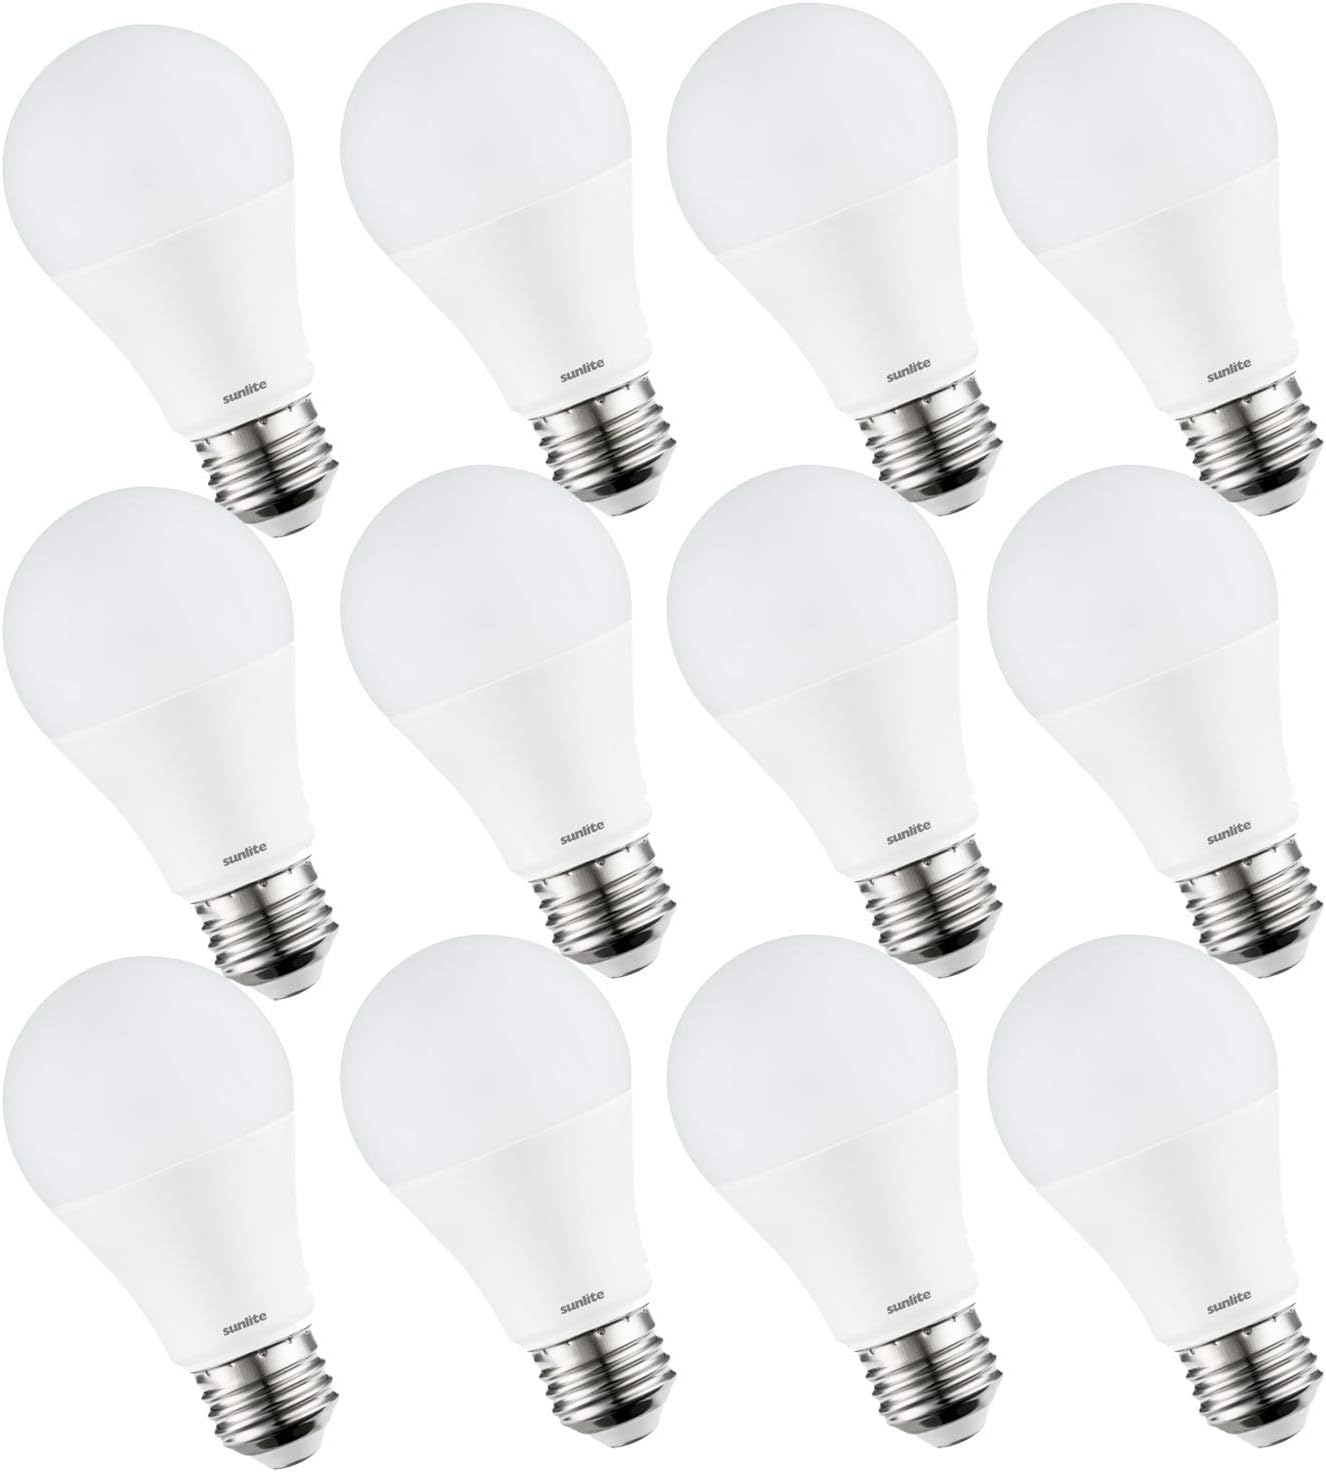 Sunlite LED A19 Standard Light Bulb, 6 Watts (40 Watt Equivalent), 450 Lumens, Medium Base (E26), Dimmable, UL Listed, Energy Star, 5000K Super White, 12 Pack